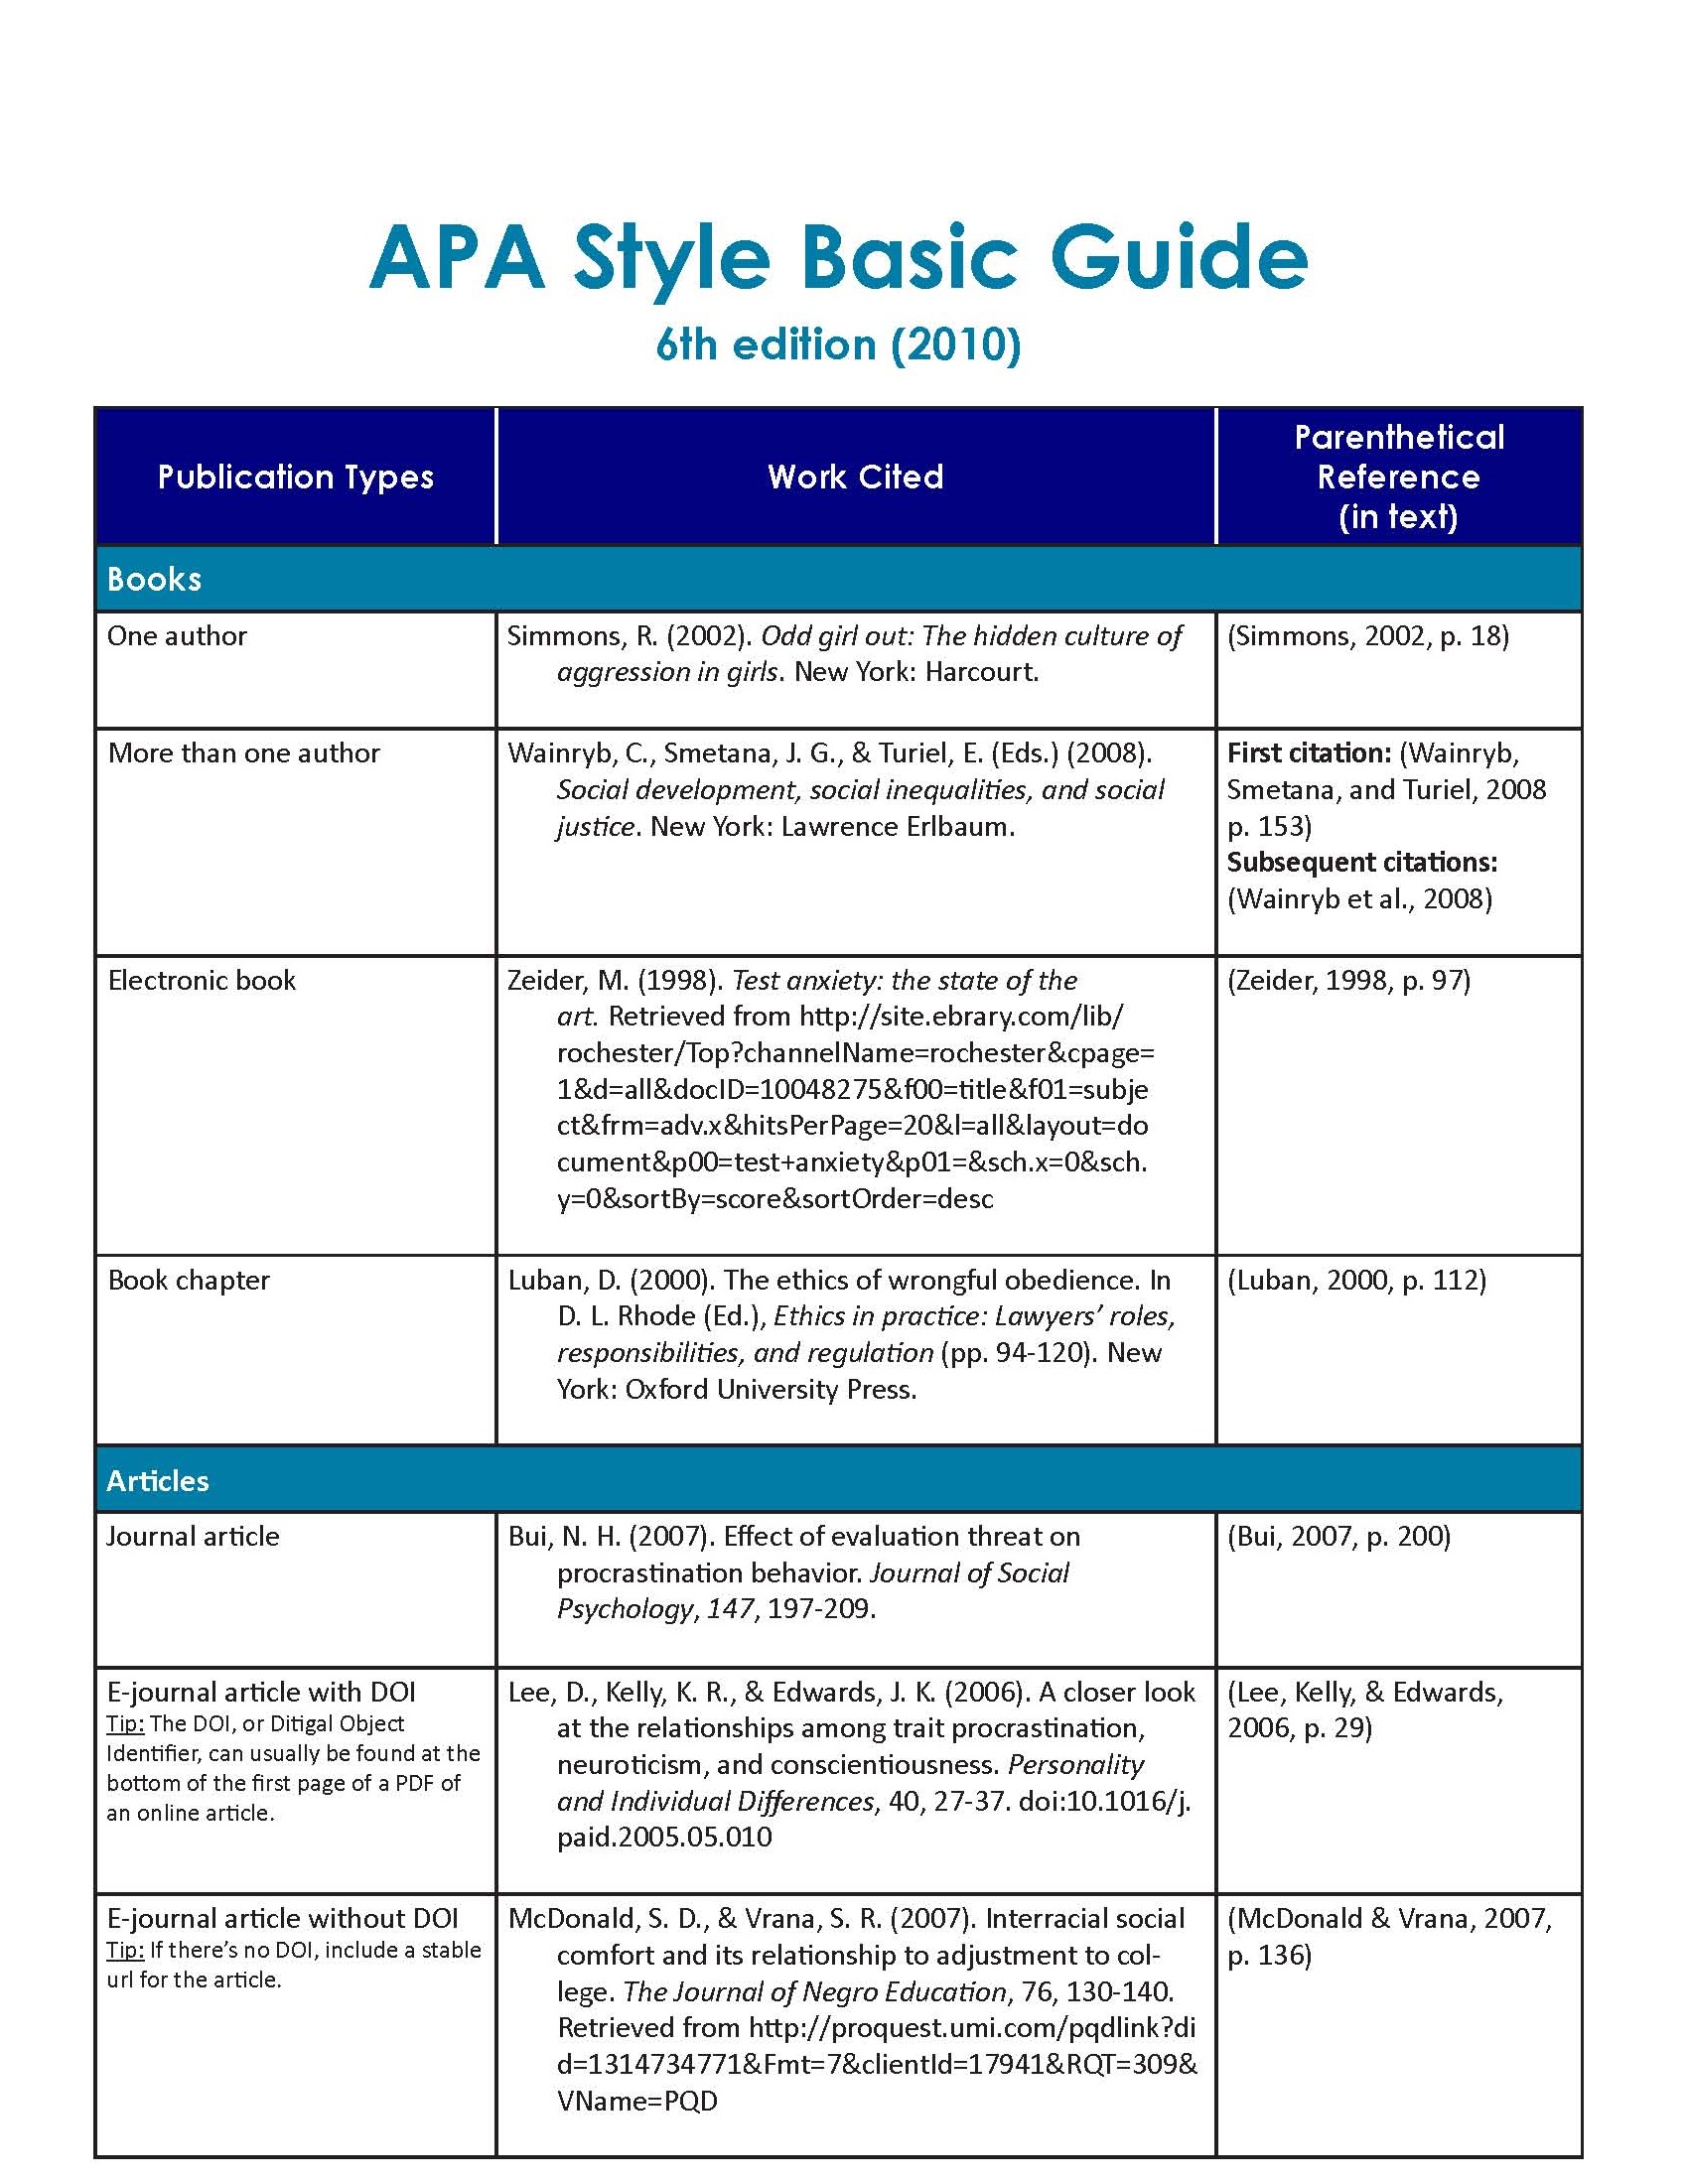 How to apa cite a pdf